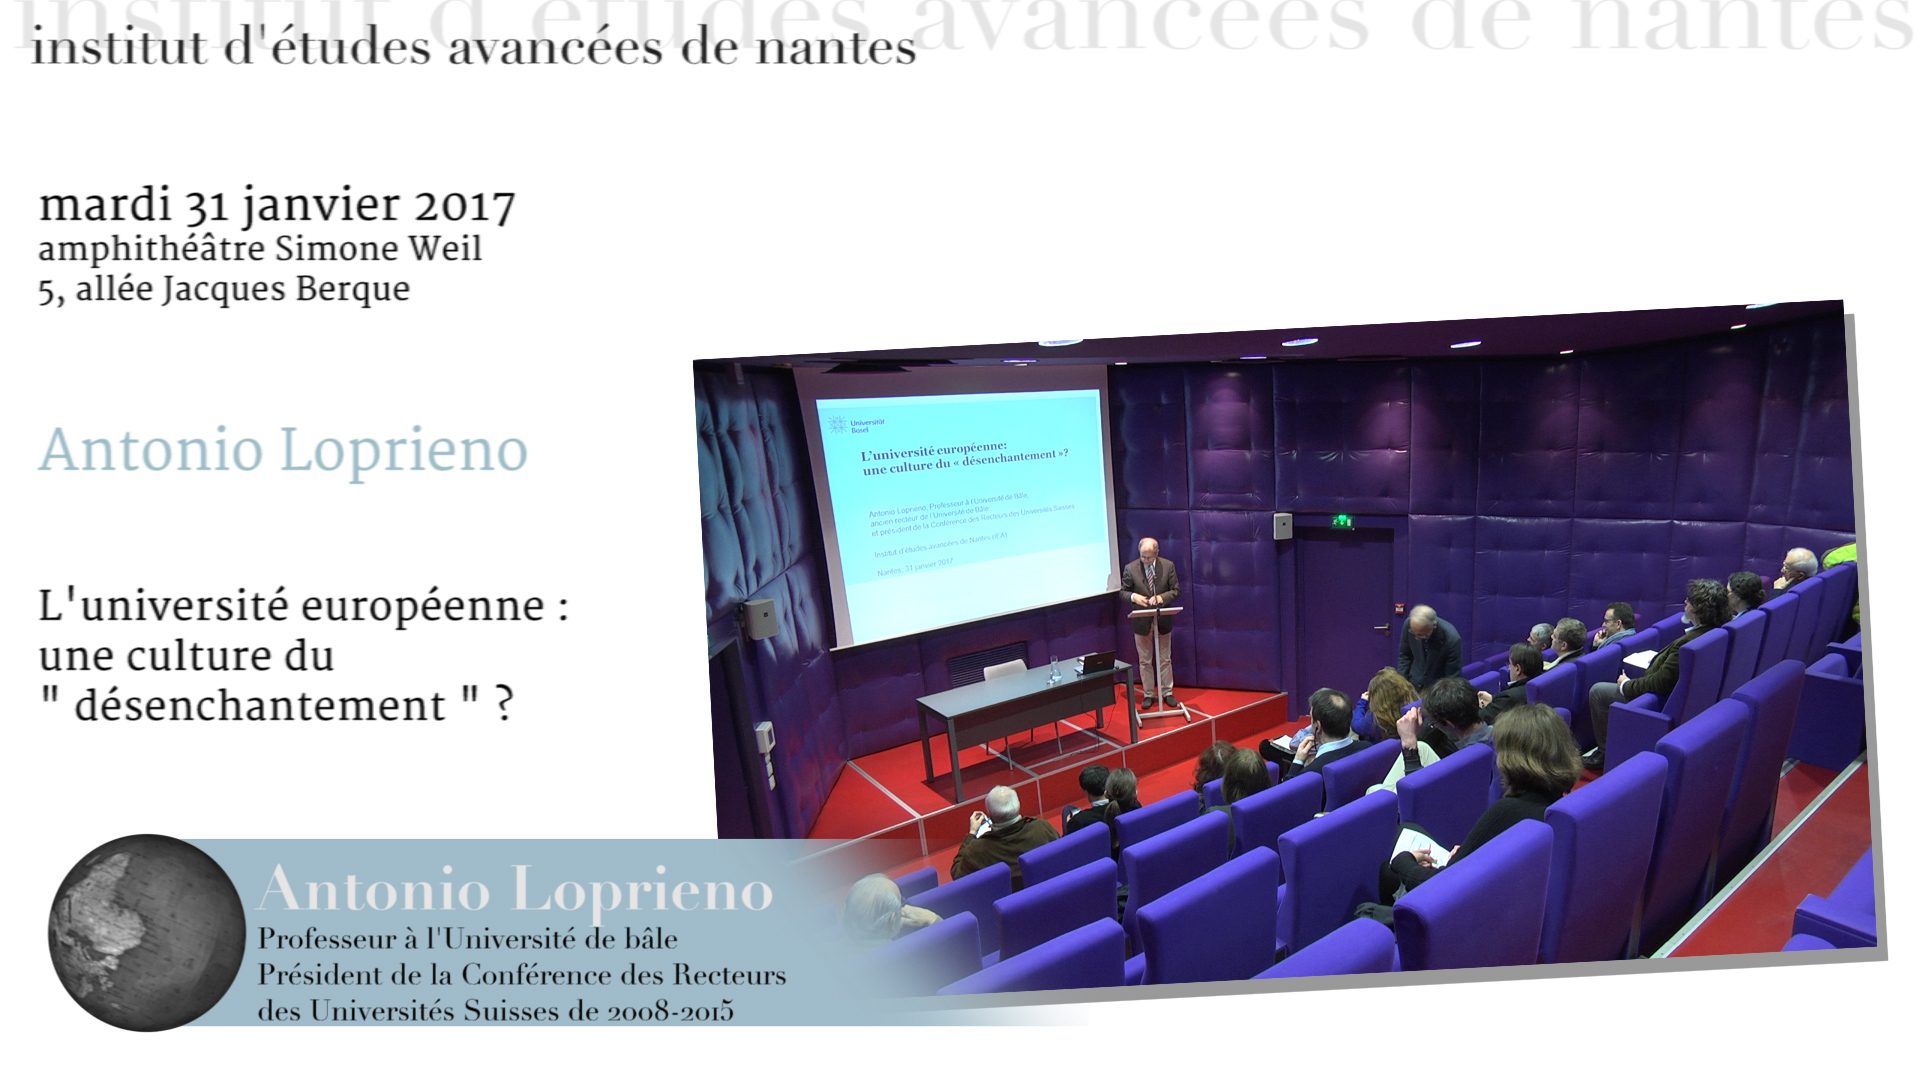 Conférence d'Antonio Loprieno : " L'université européenne : une culture du désenchantement ? "